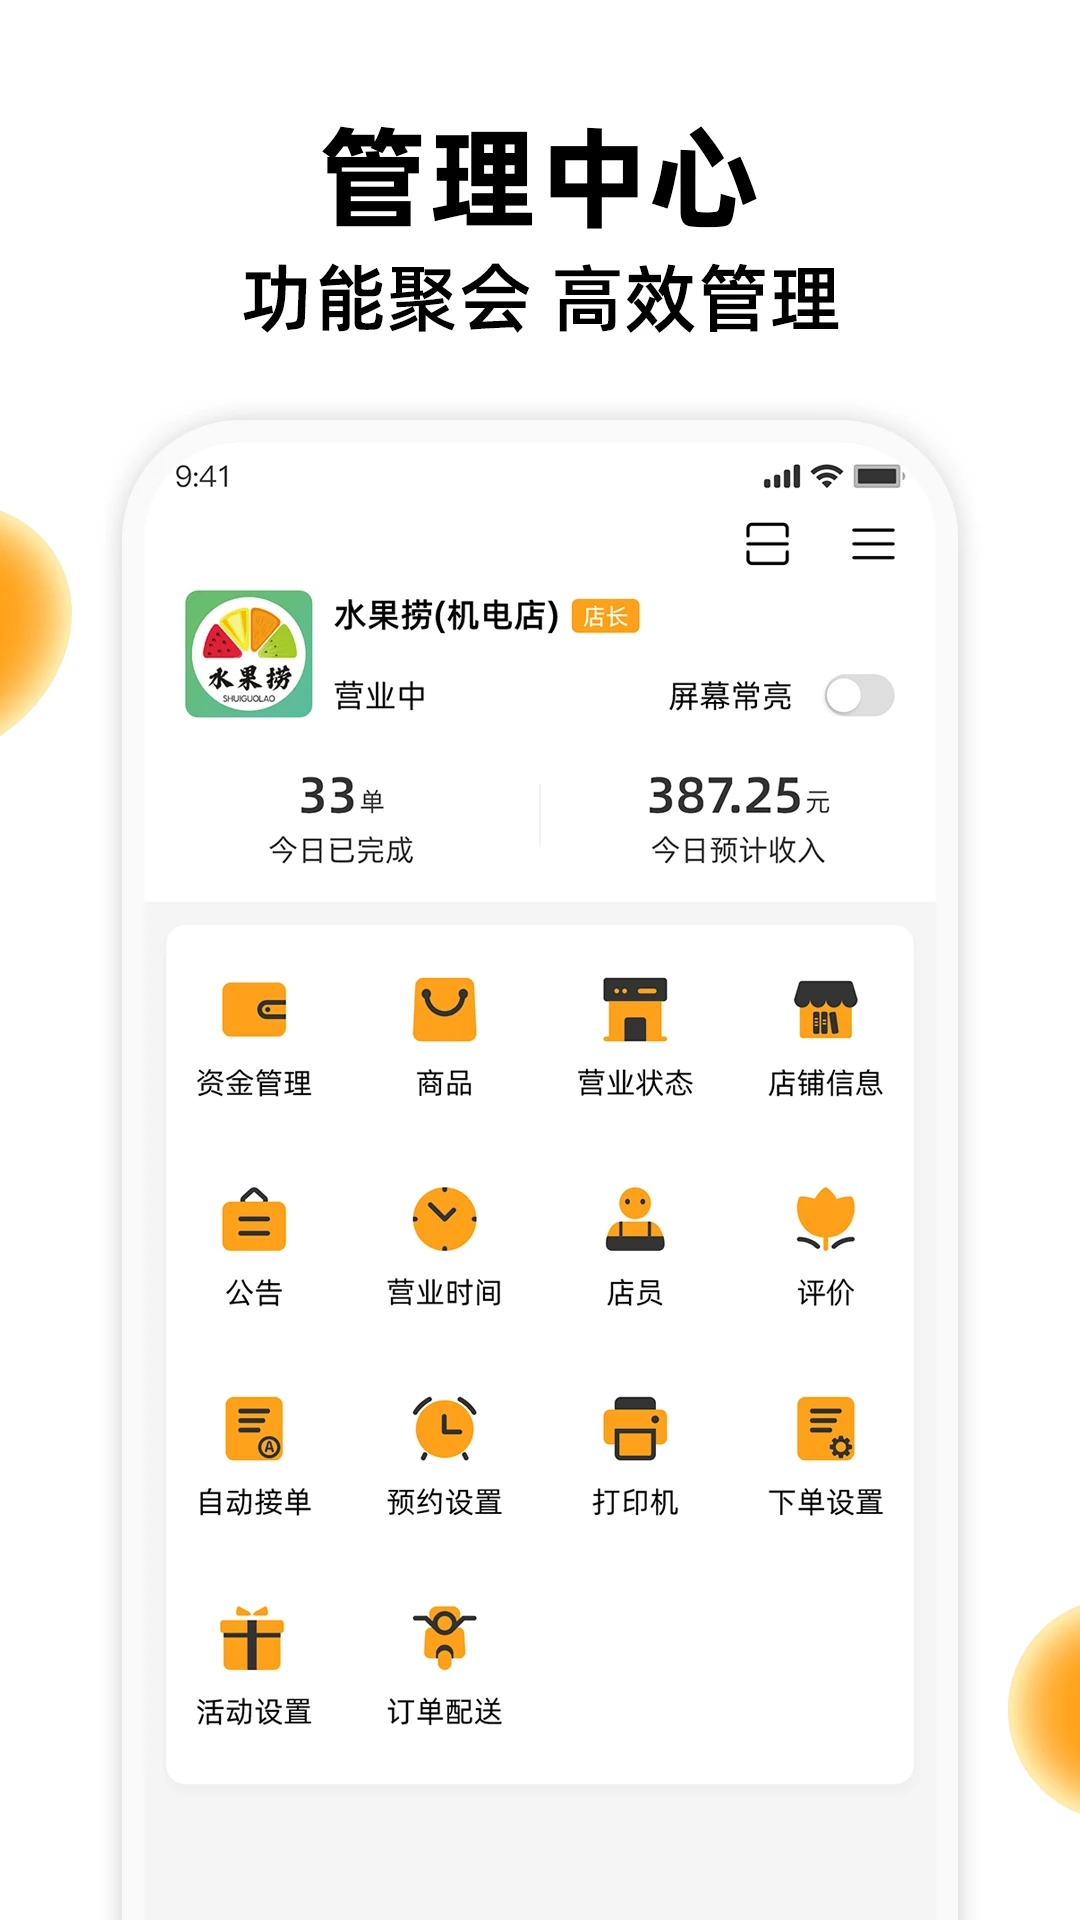 橙子校园商户端下载-橙子校园商户端安卓appv3.11.1 最新版